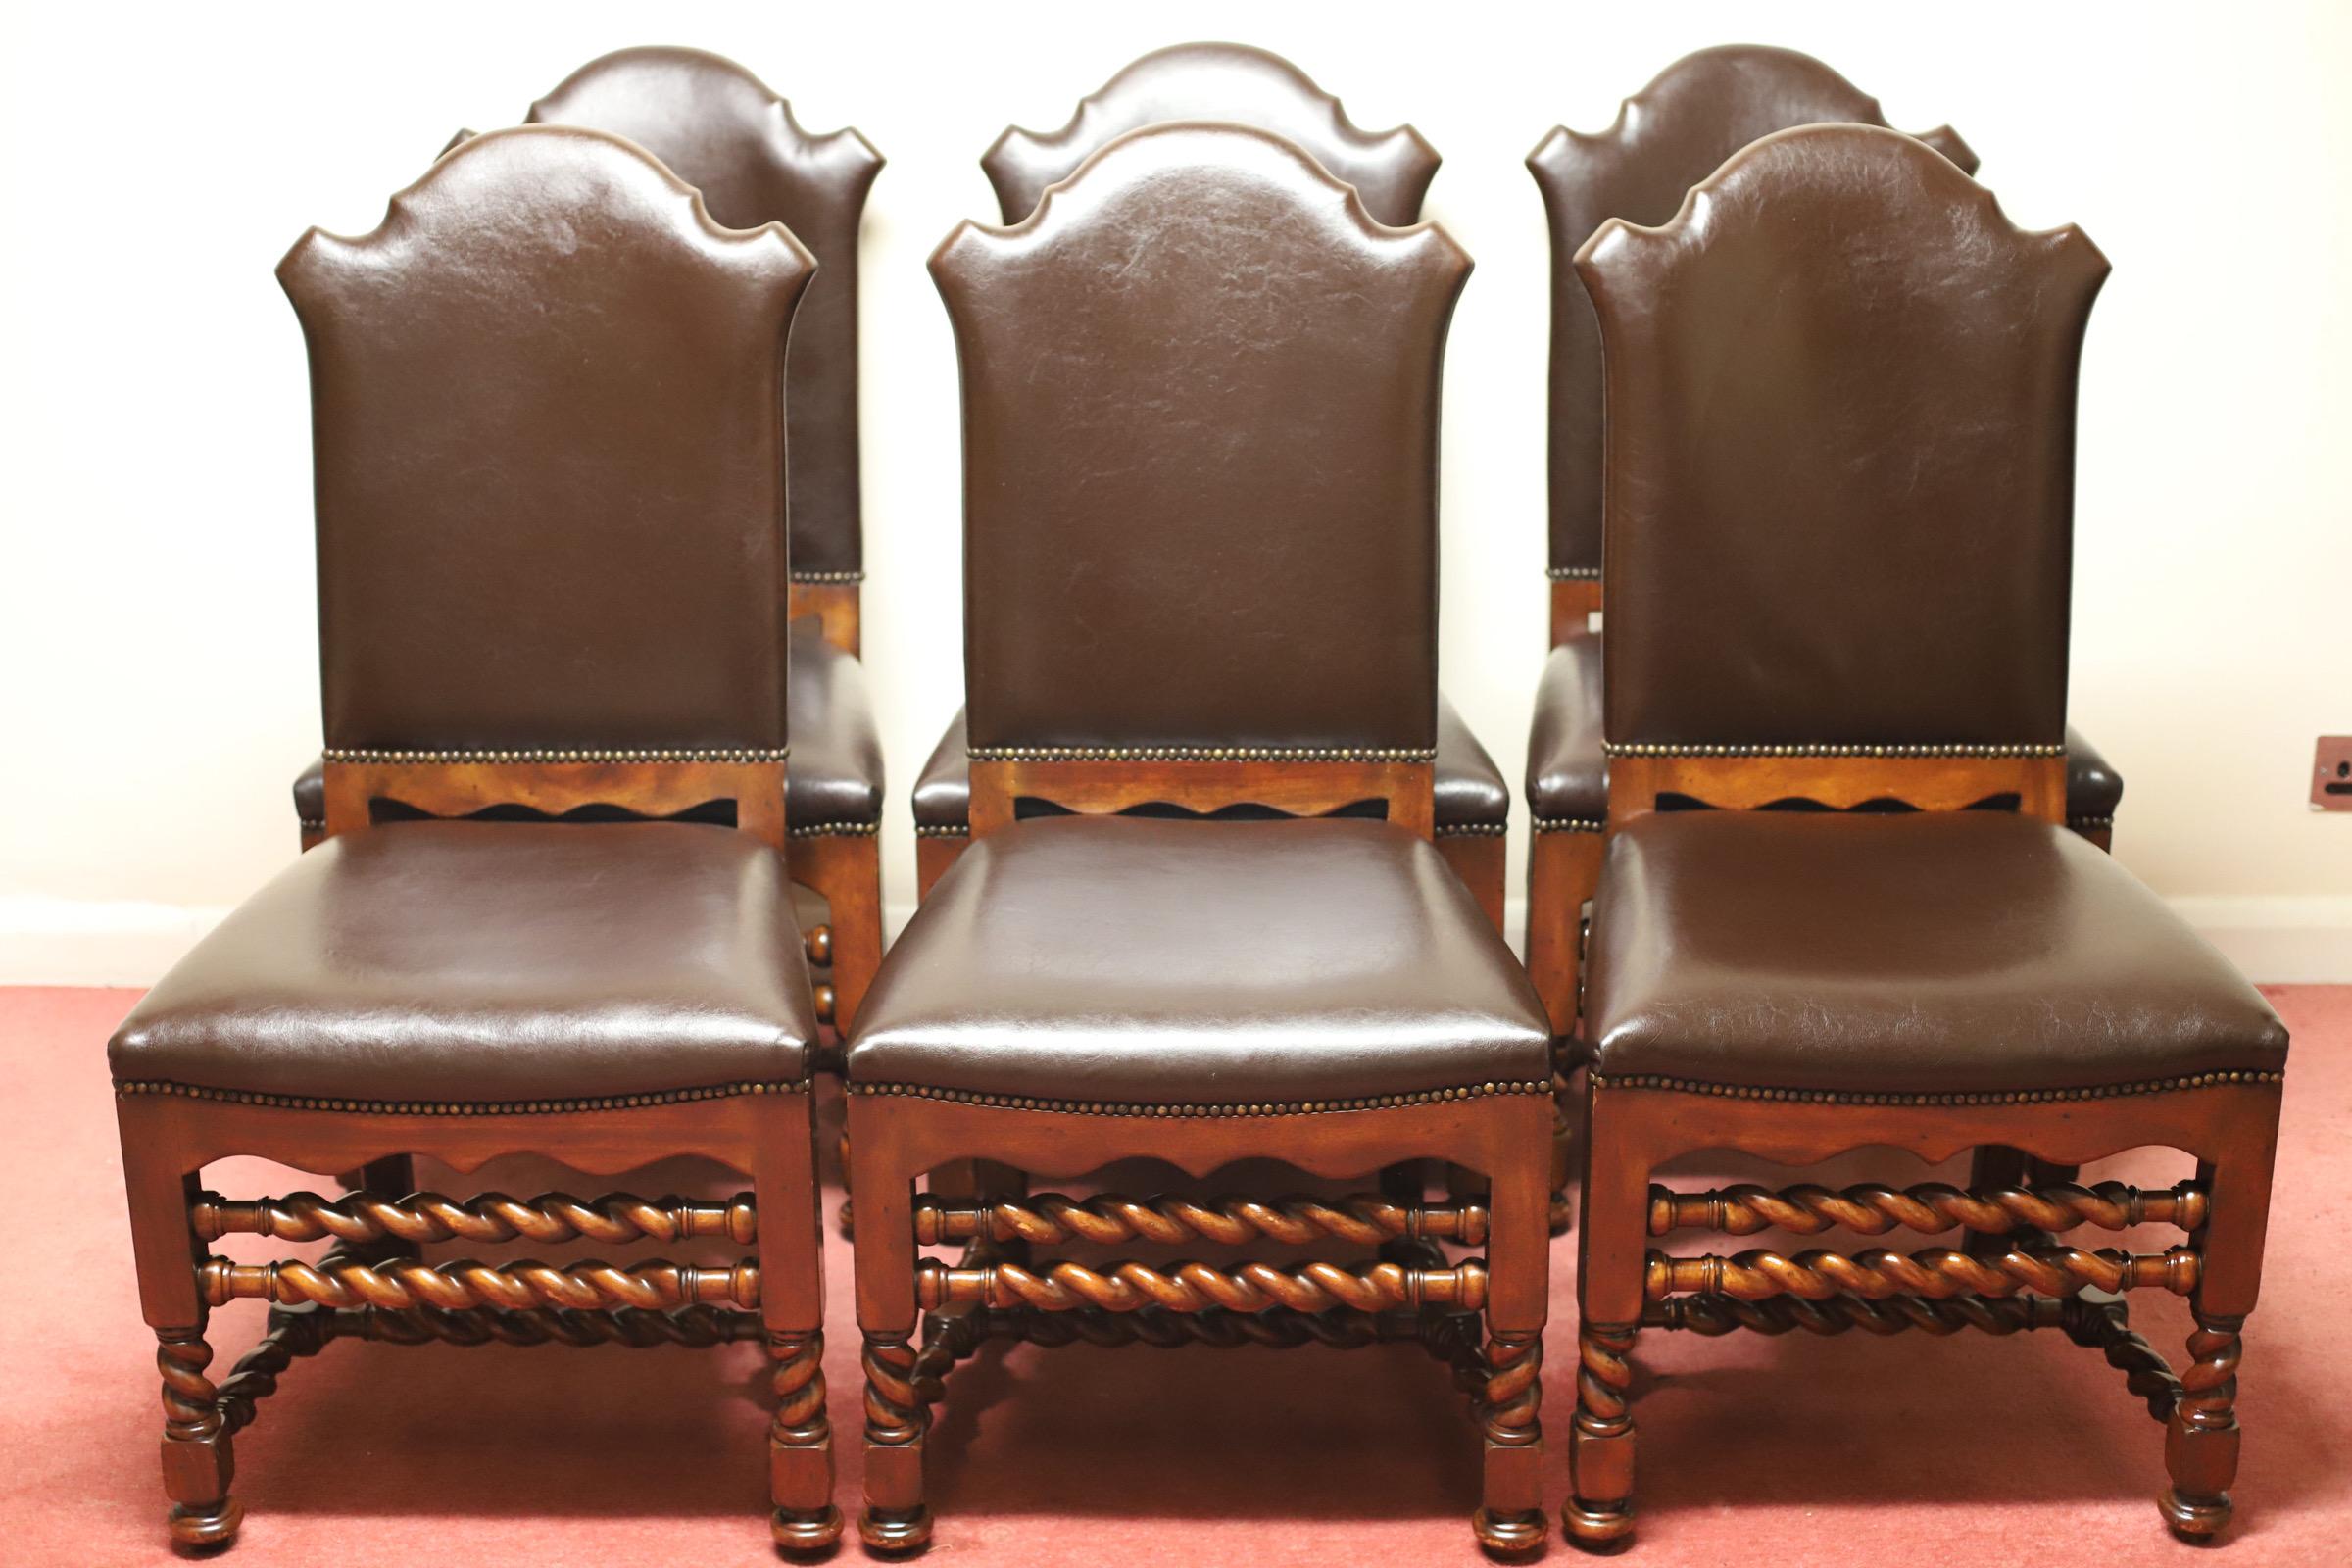 Schöner Satz von 6 modernen, spiralförmig gedrehten Esszimmerstühlen aus Kastanienholz von Theodore Alexander.
Die Sitze und Rückenlehnen sind mit weichem braunem Leder gepolstert - mit feuerhemmenden Sicherheitsetiketten, die unter der weichen